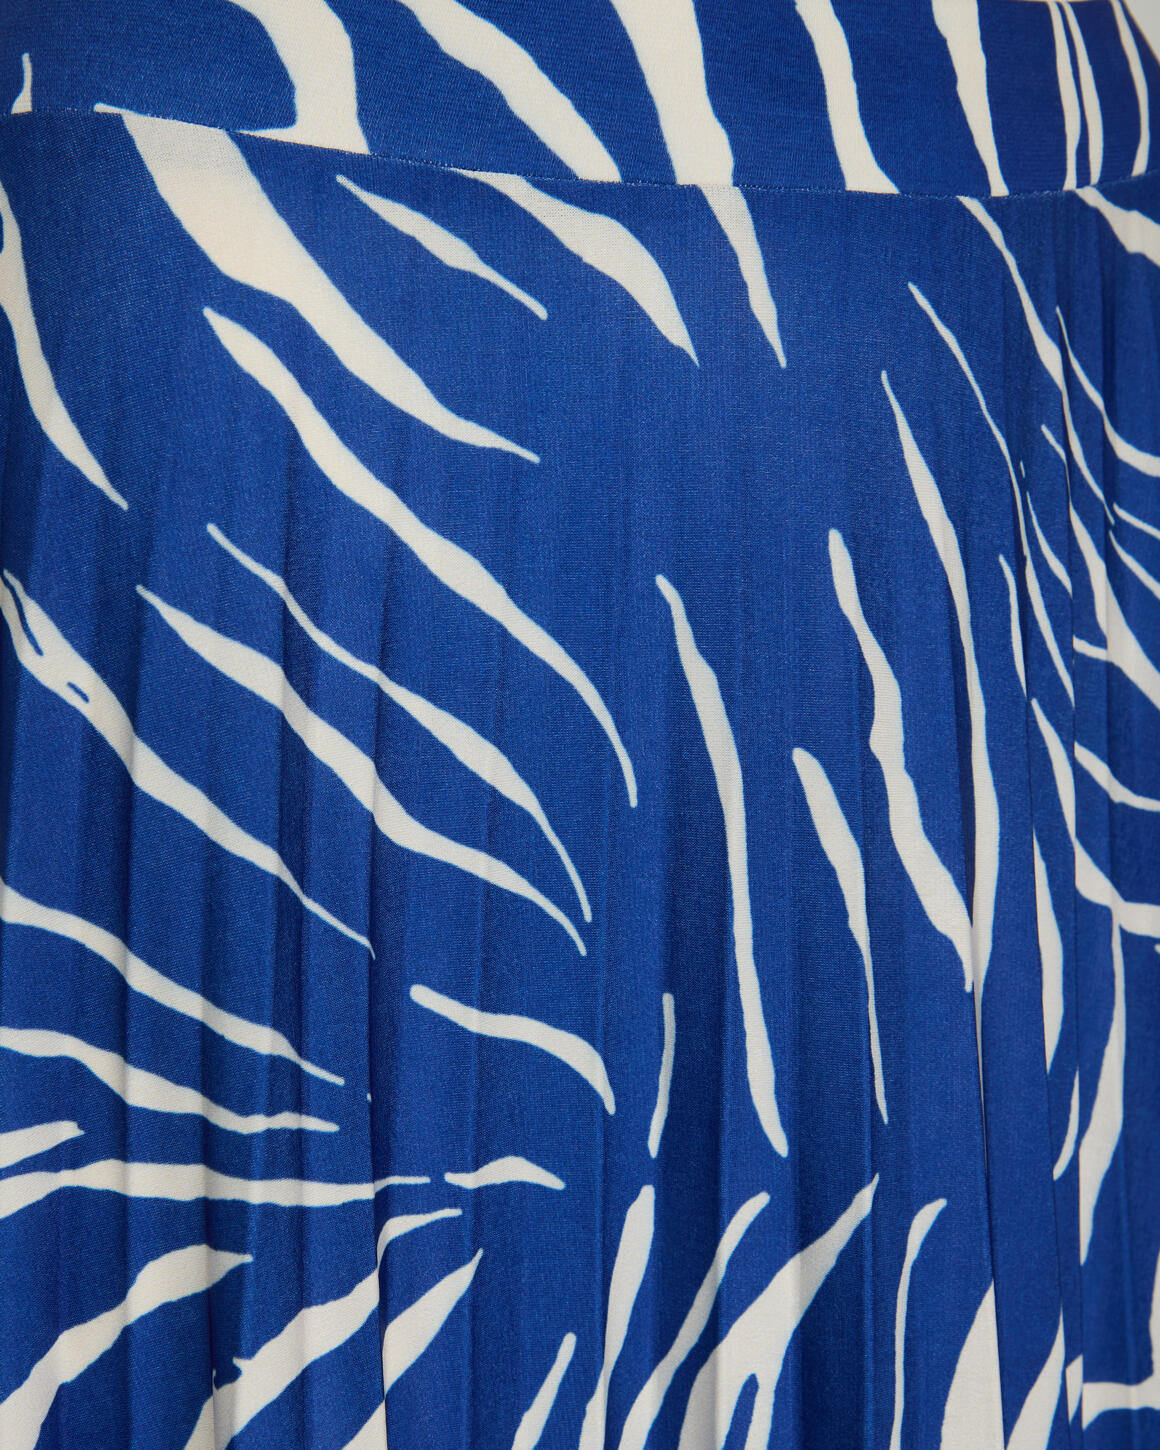 SISTERS POINT Blue Zebra Malou-SK6 kjol